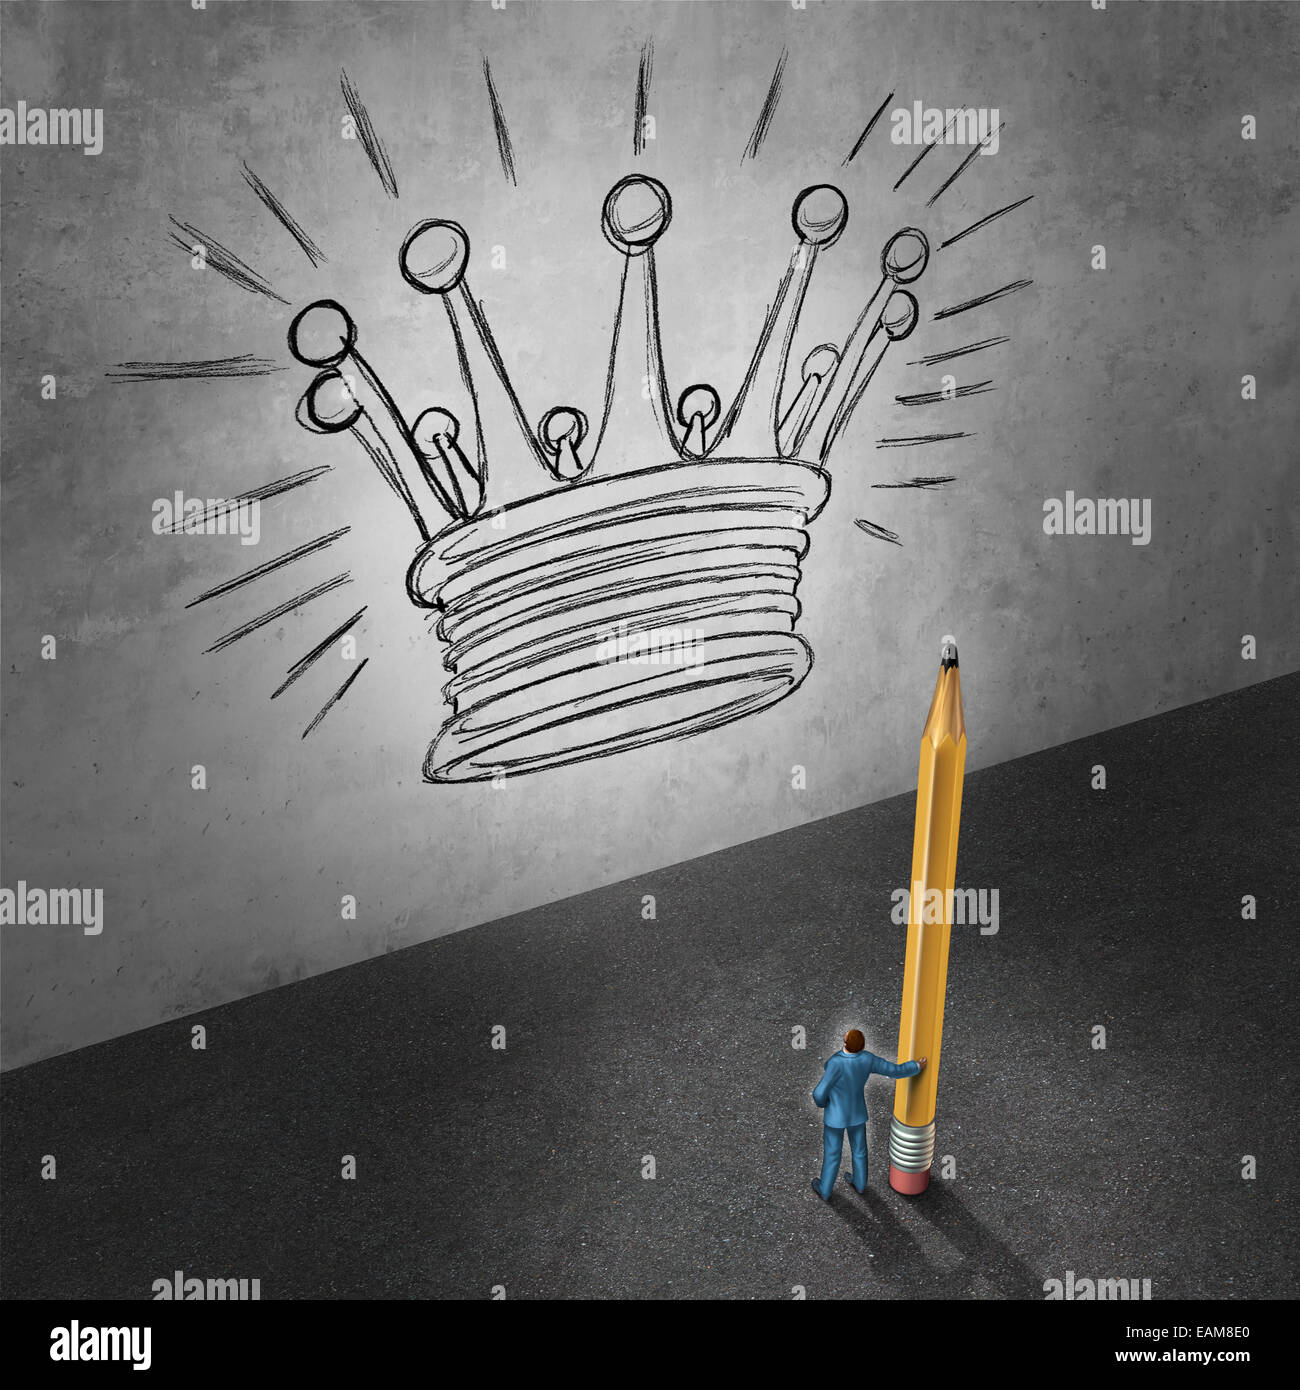 Führung-Entwicklungskonzept als Geschäftsmann hält einen Riesen Bleistift, Blick auf eine Wand mit einer Zeichnung eines Königs Krone als Erfolg Metapher Feind Management Ziele zu erreichen. Stockfoto